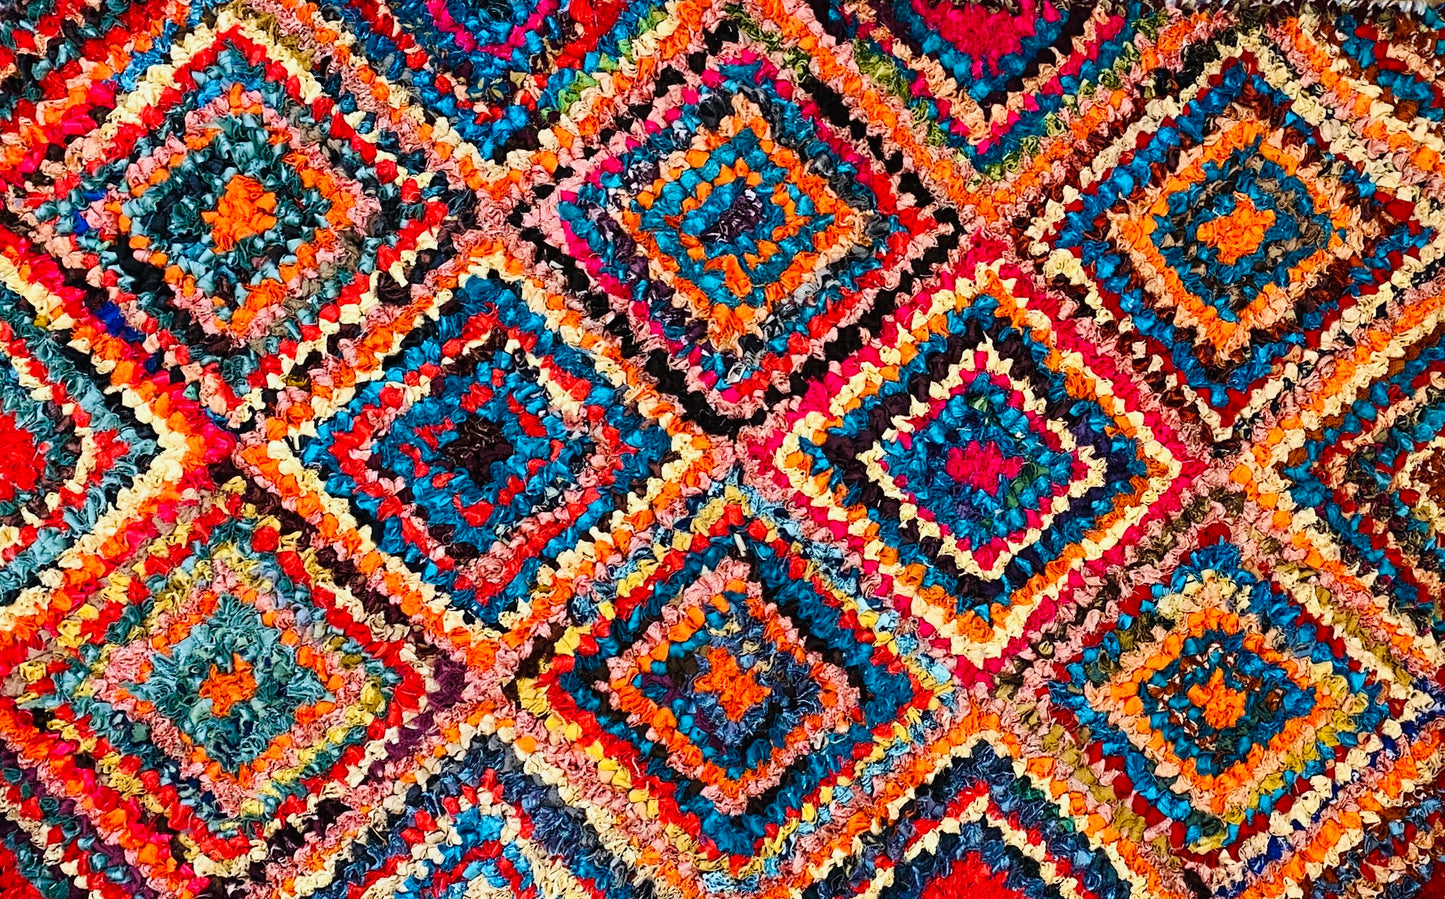 Fußmatte Diamond multicolor 50x80 recycled Saris No. 5